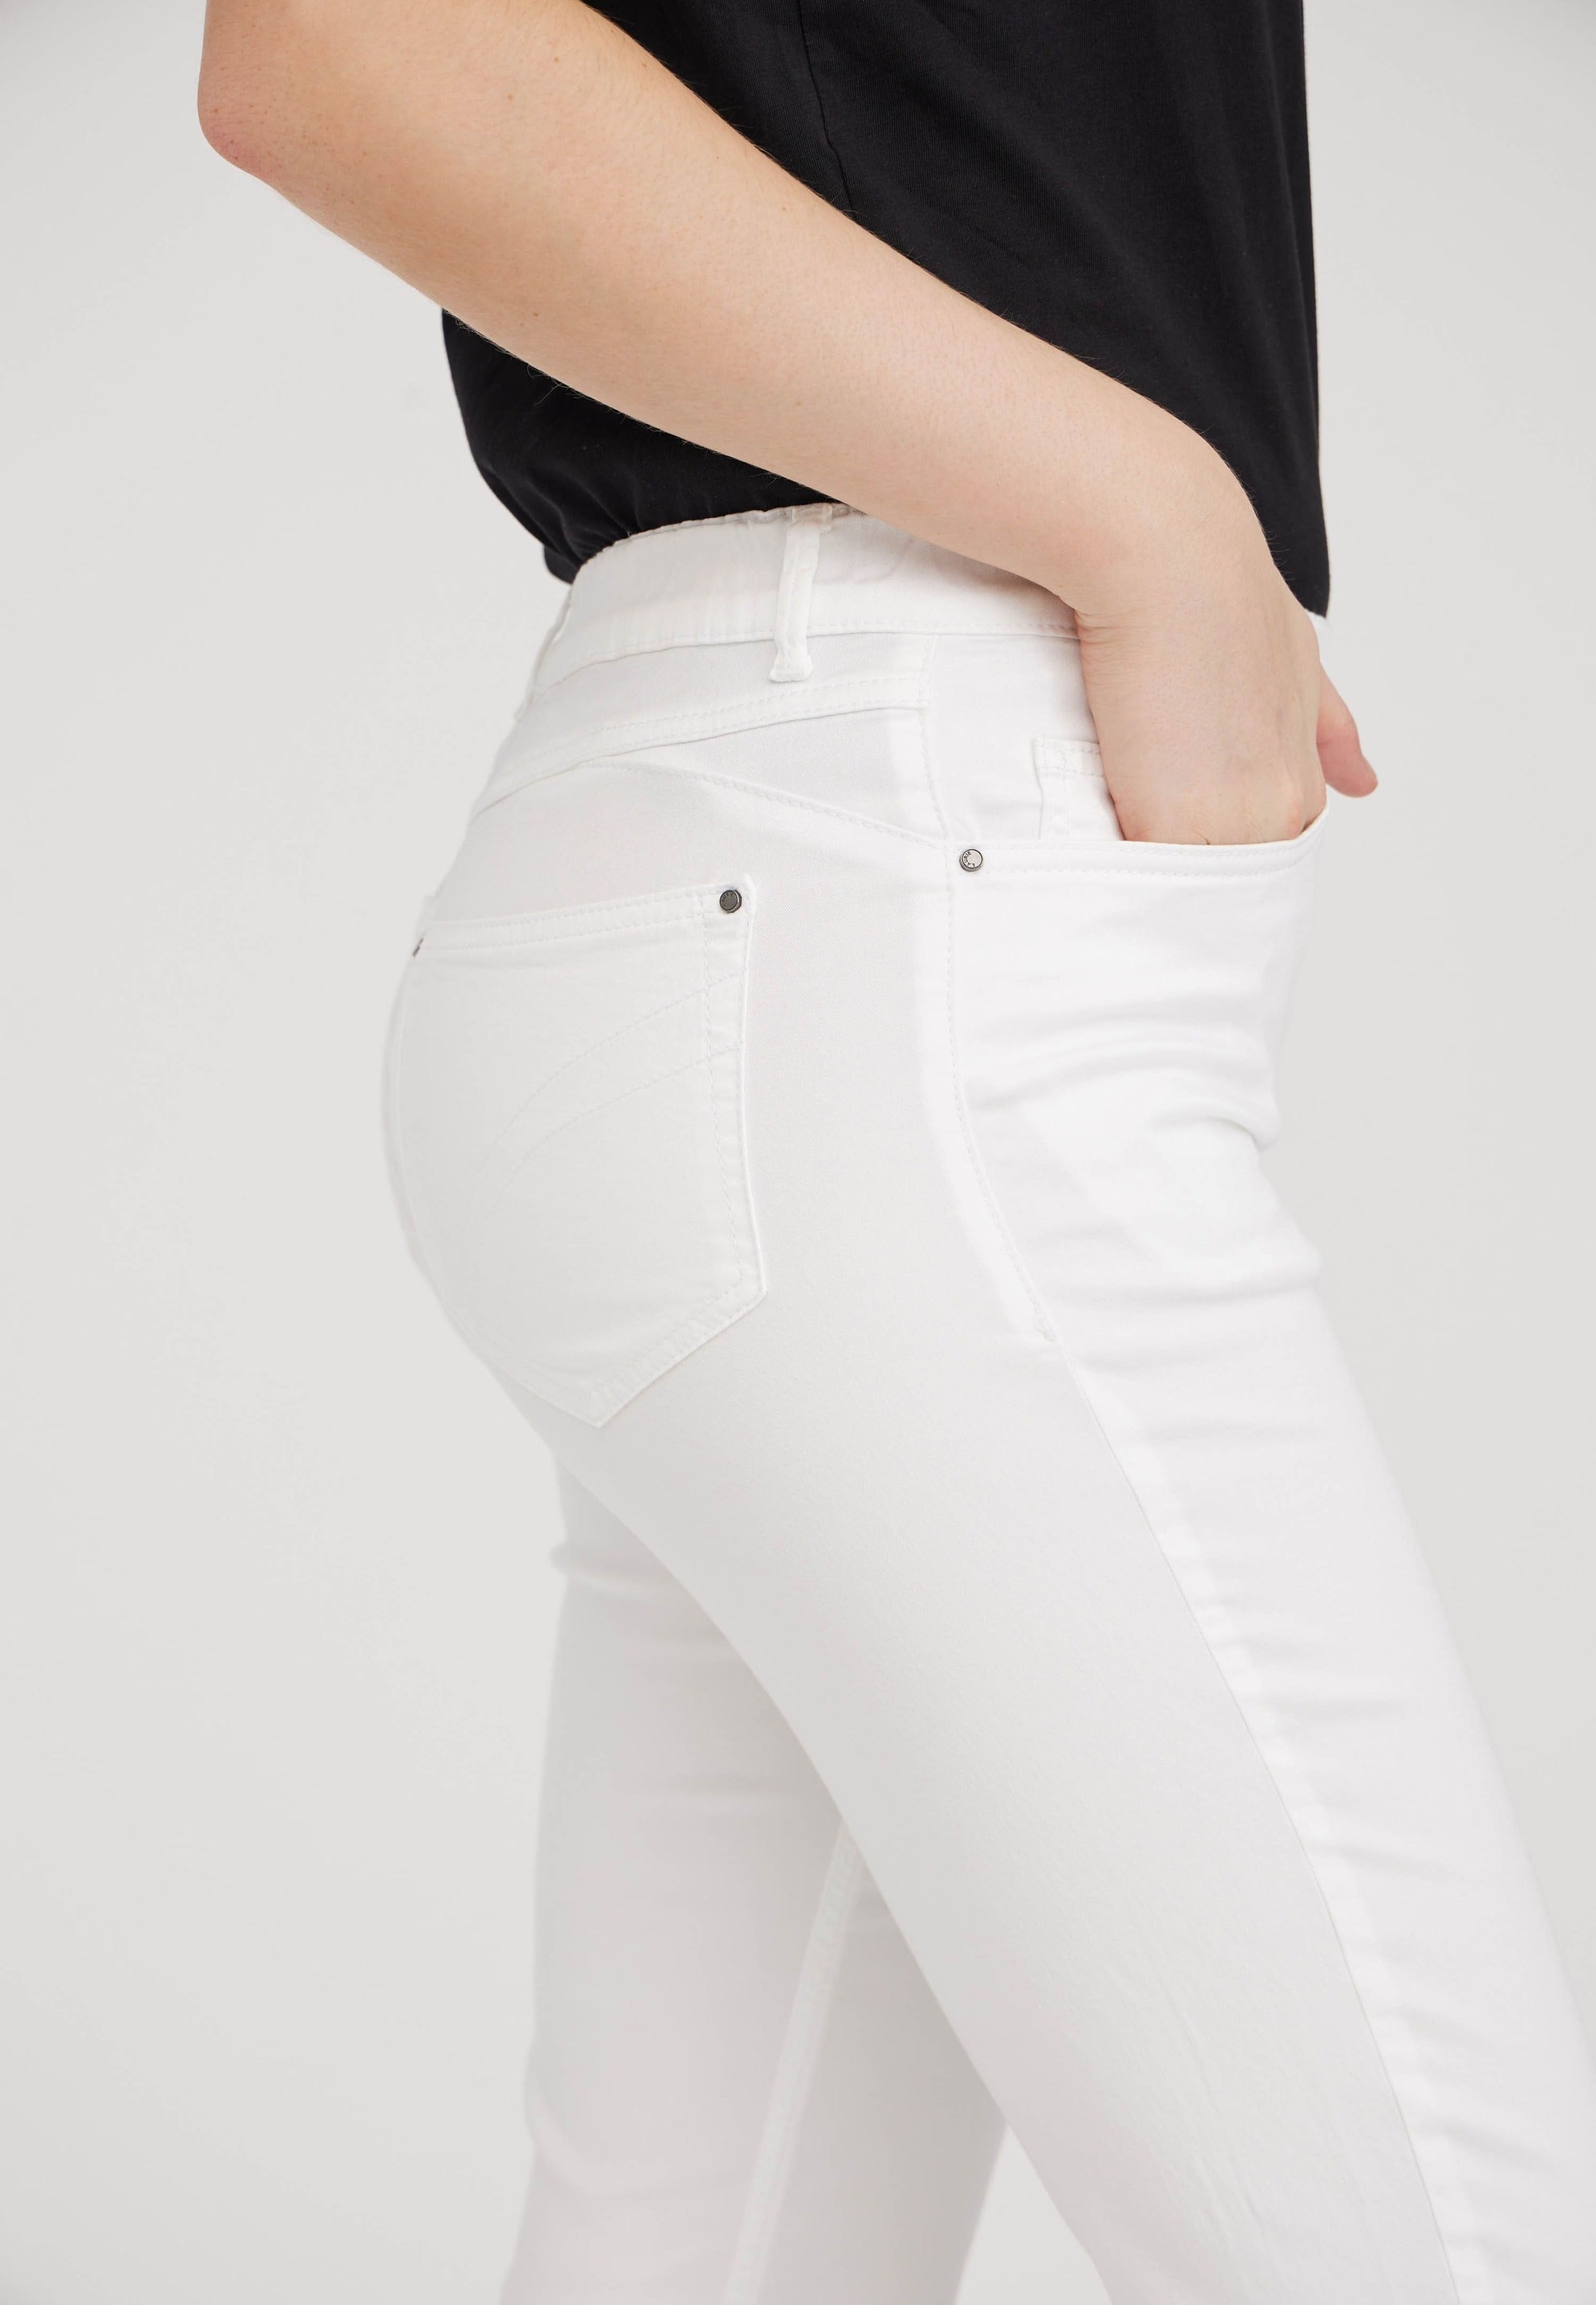 LAURIE  Hannah Regular - Medium Length Trousers REGULAR 10122 White